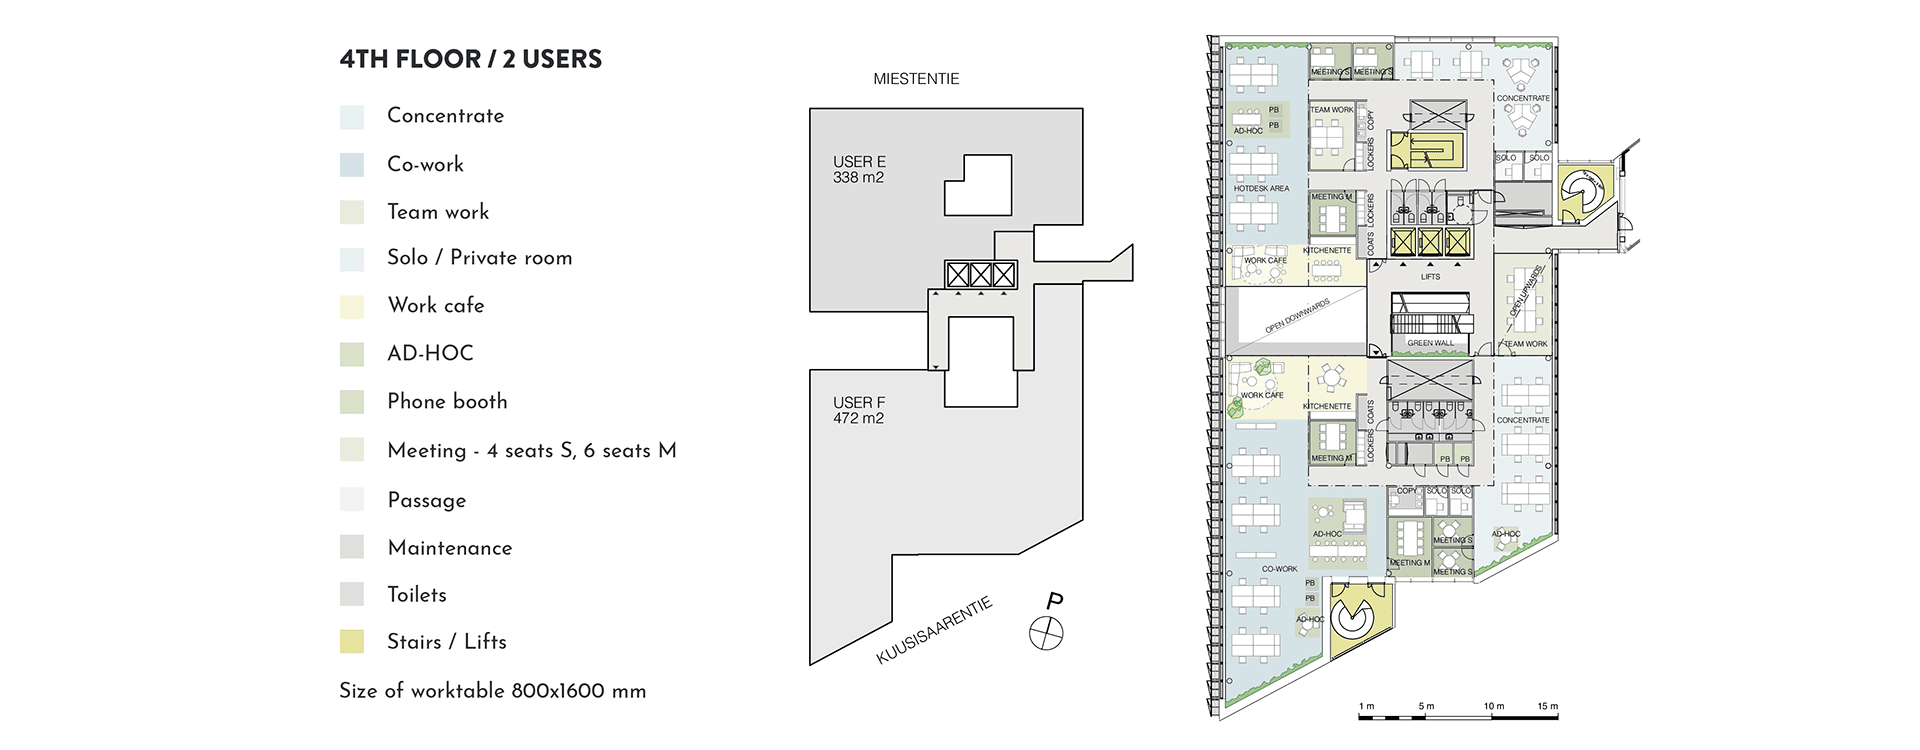 Swing House pohjapiirros monitilatoimisto, tilanjakoesimerkki kahdelle käyttäjälle, 4. krs., pinta-alat 338 m2 ja 472 m2